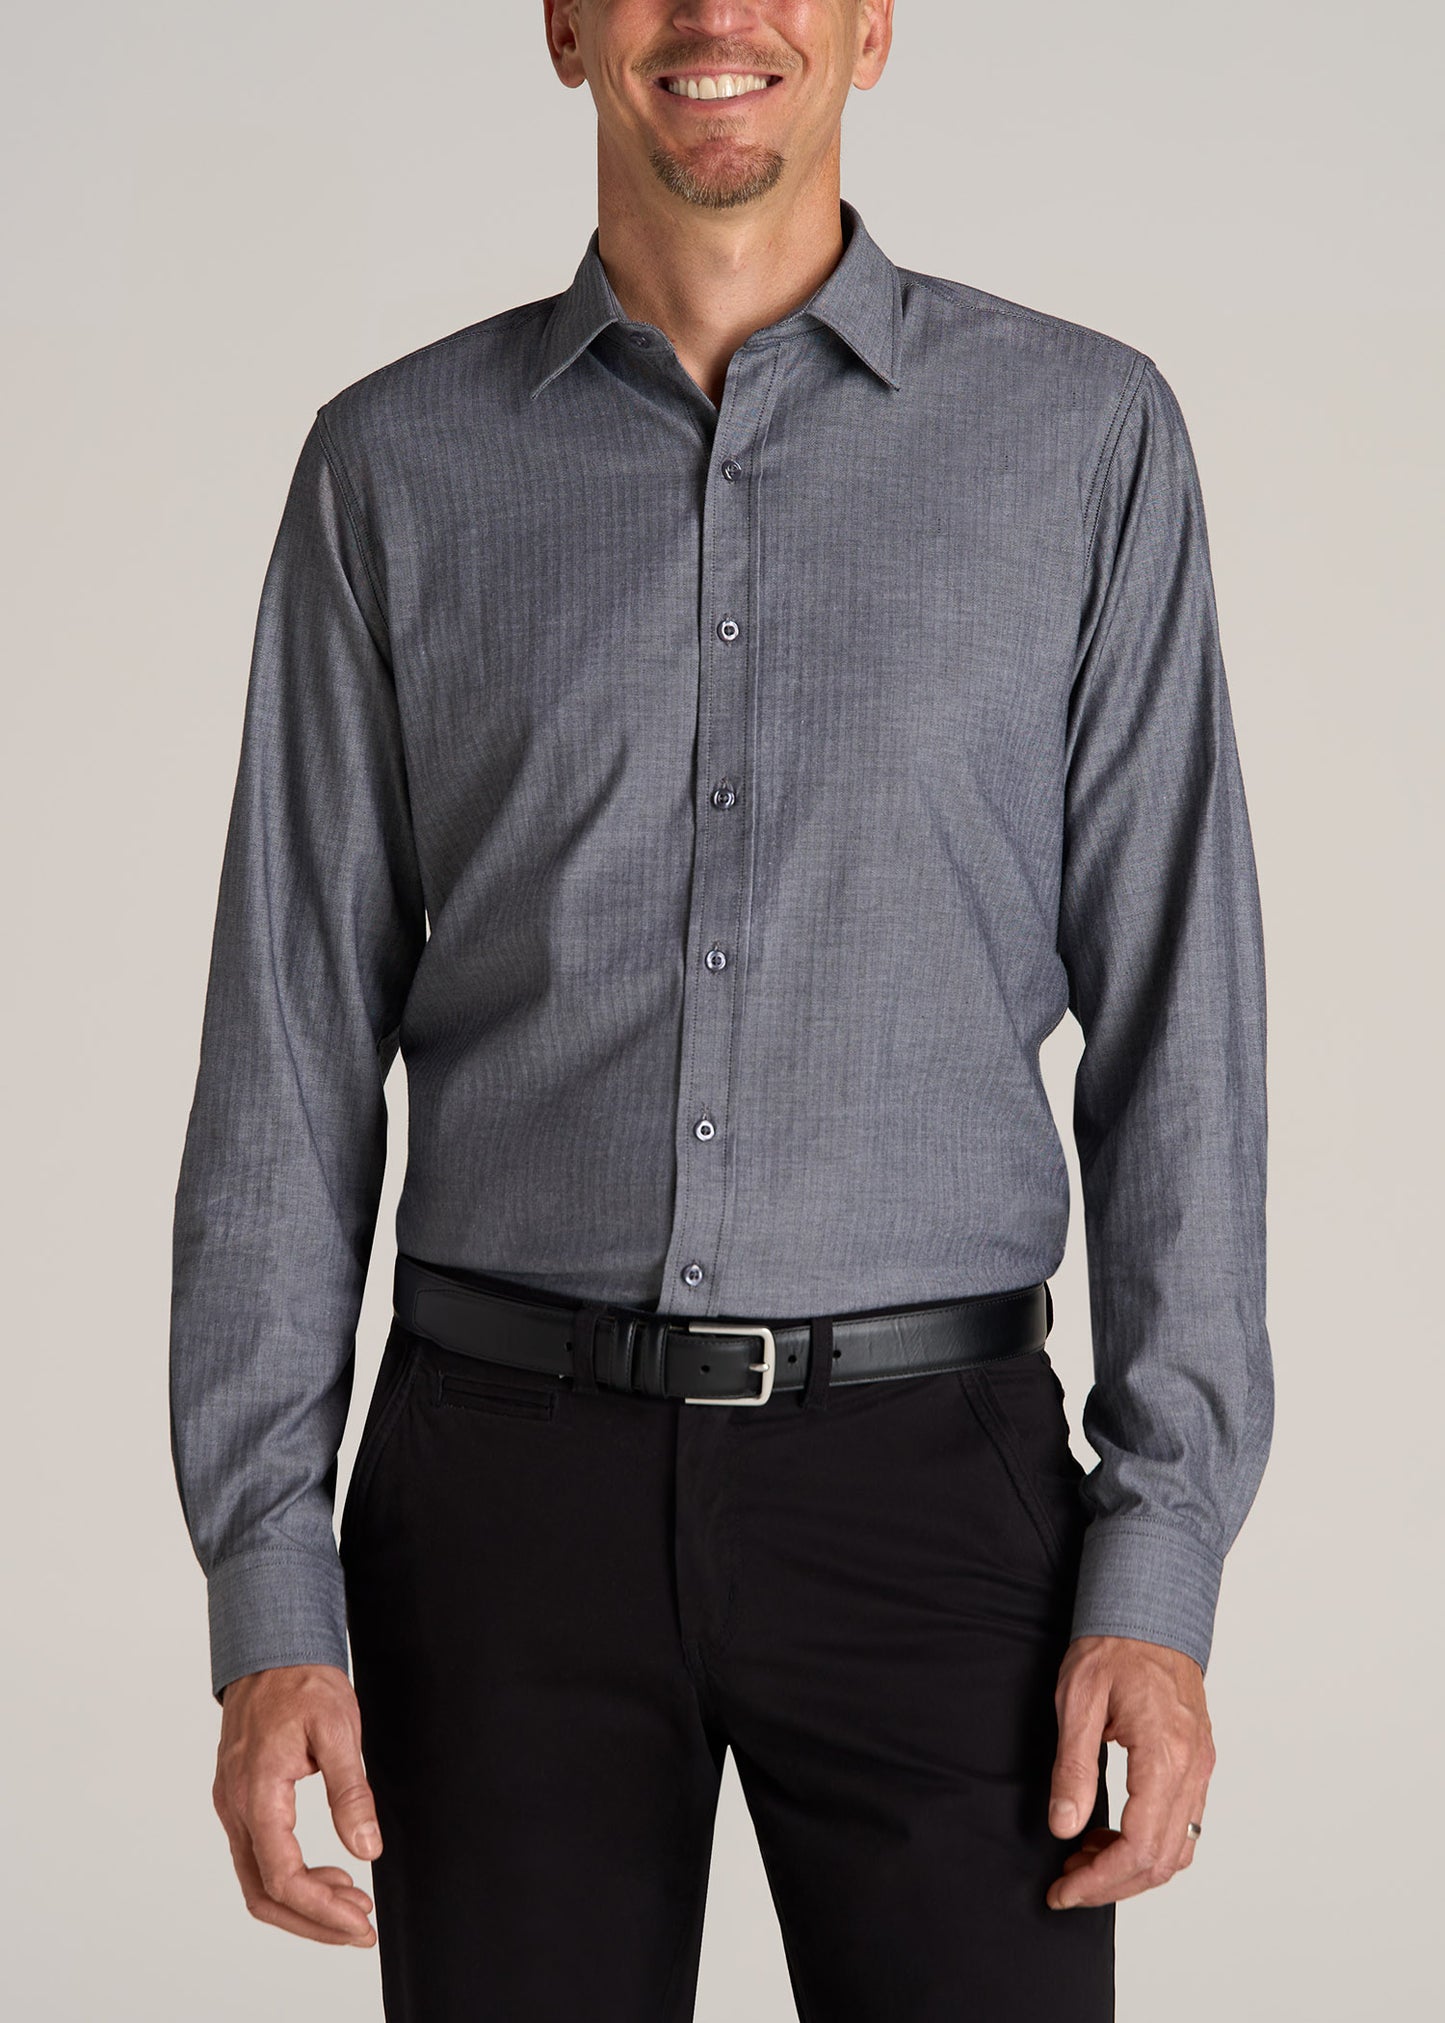 Oskar Button-Up Shirt for Tall Men